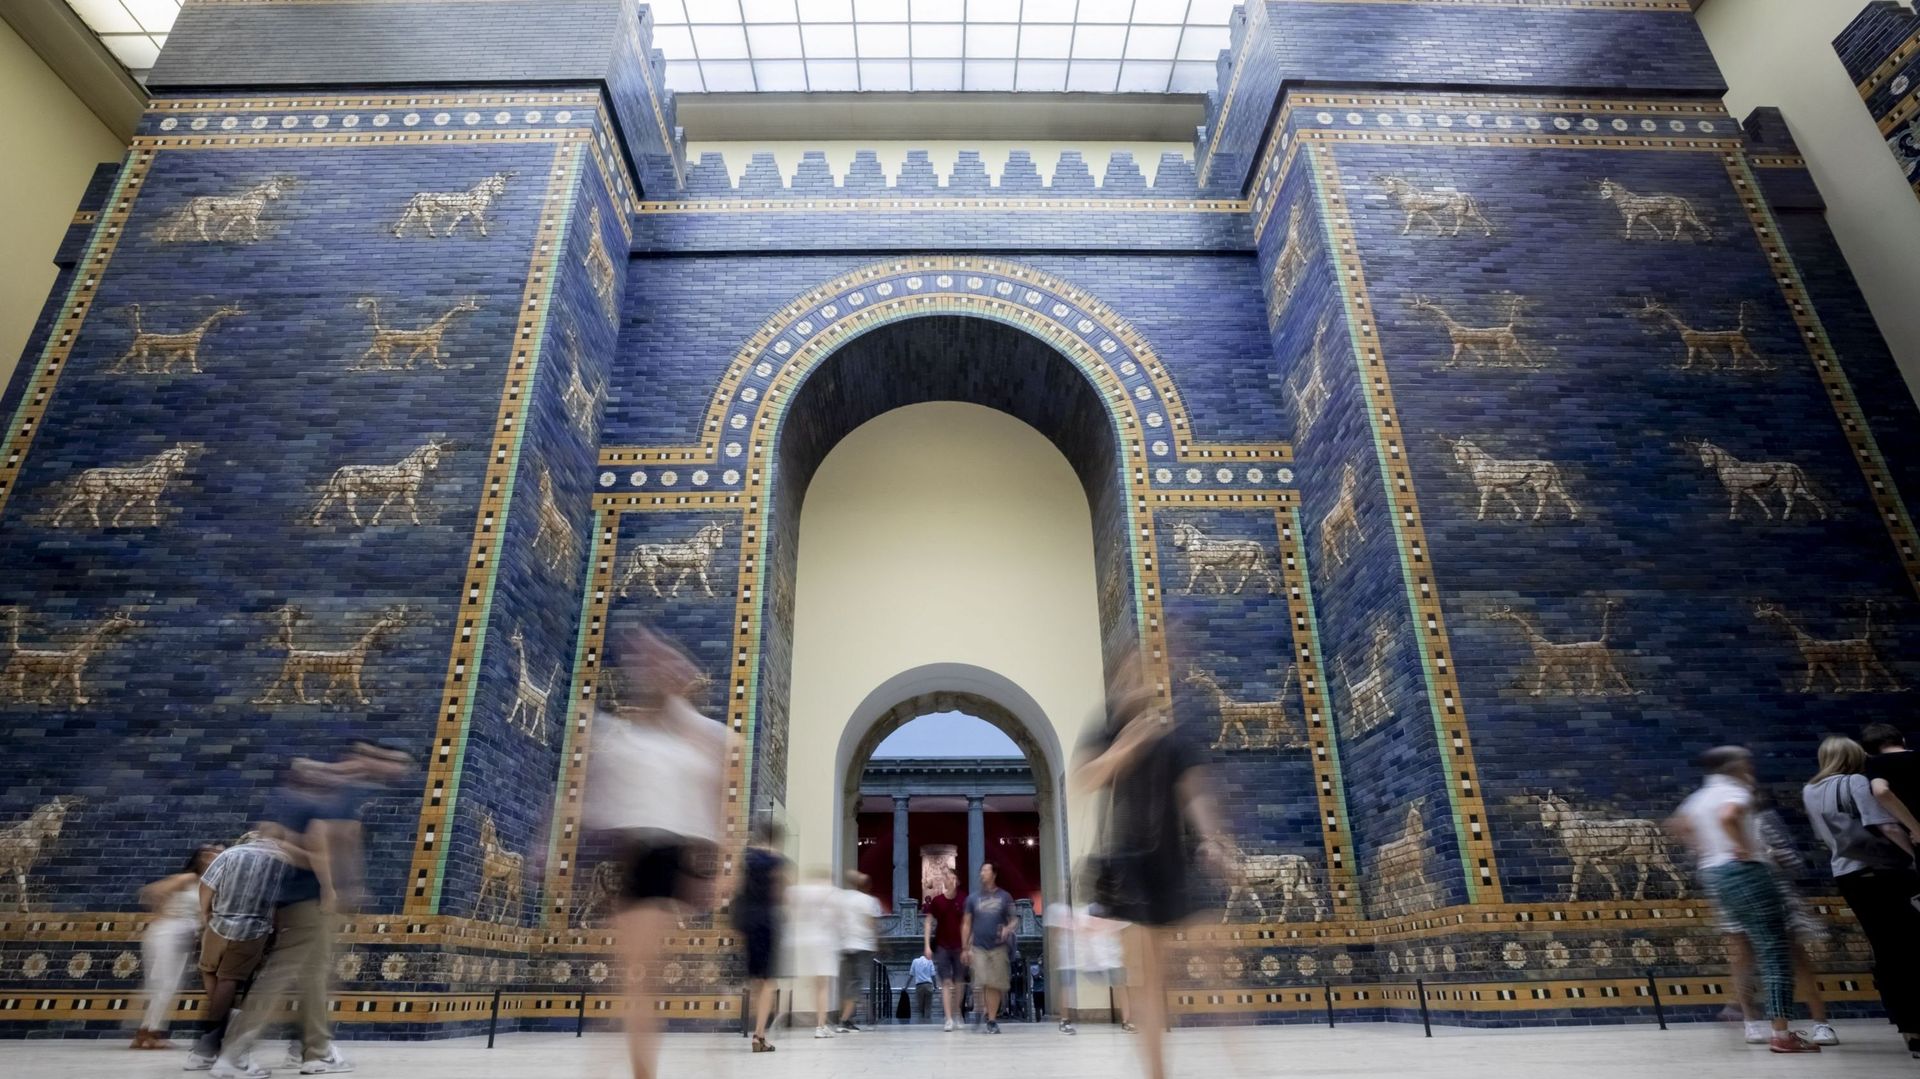 La porte d’Ishtar reconstruite au Musée Pergamon à Berlin (2019).